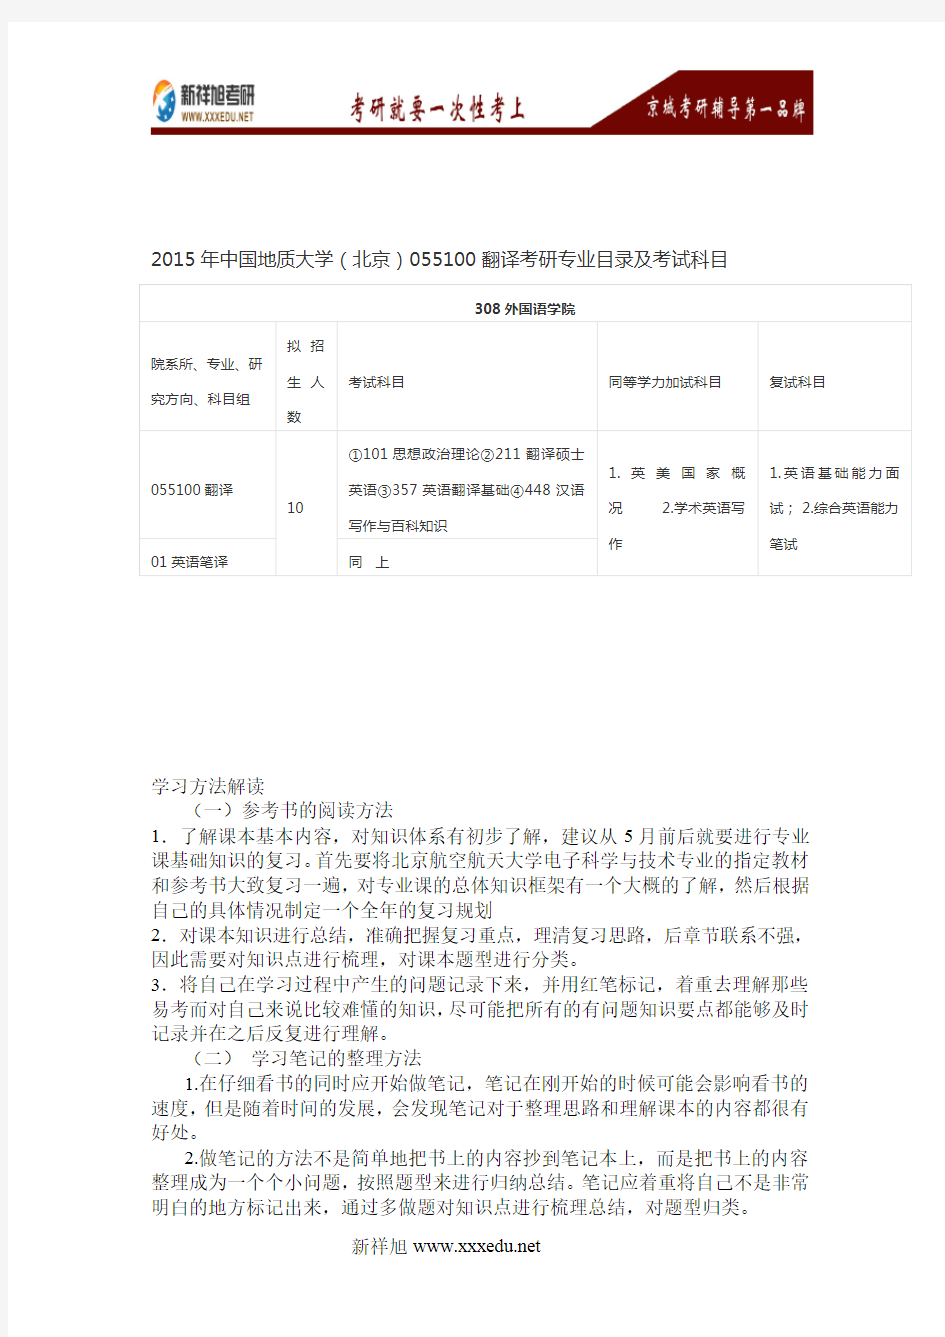 2016年中国地质大学(北京)055100翻译考研专业目录及考试科目